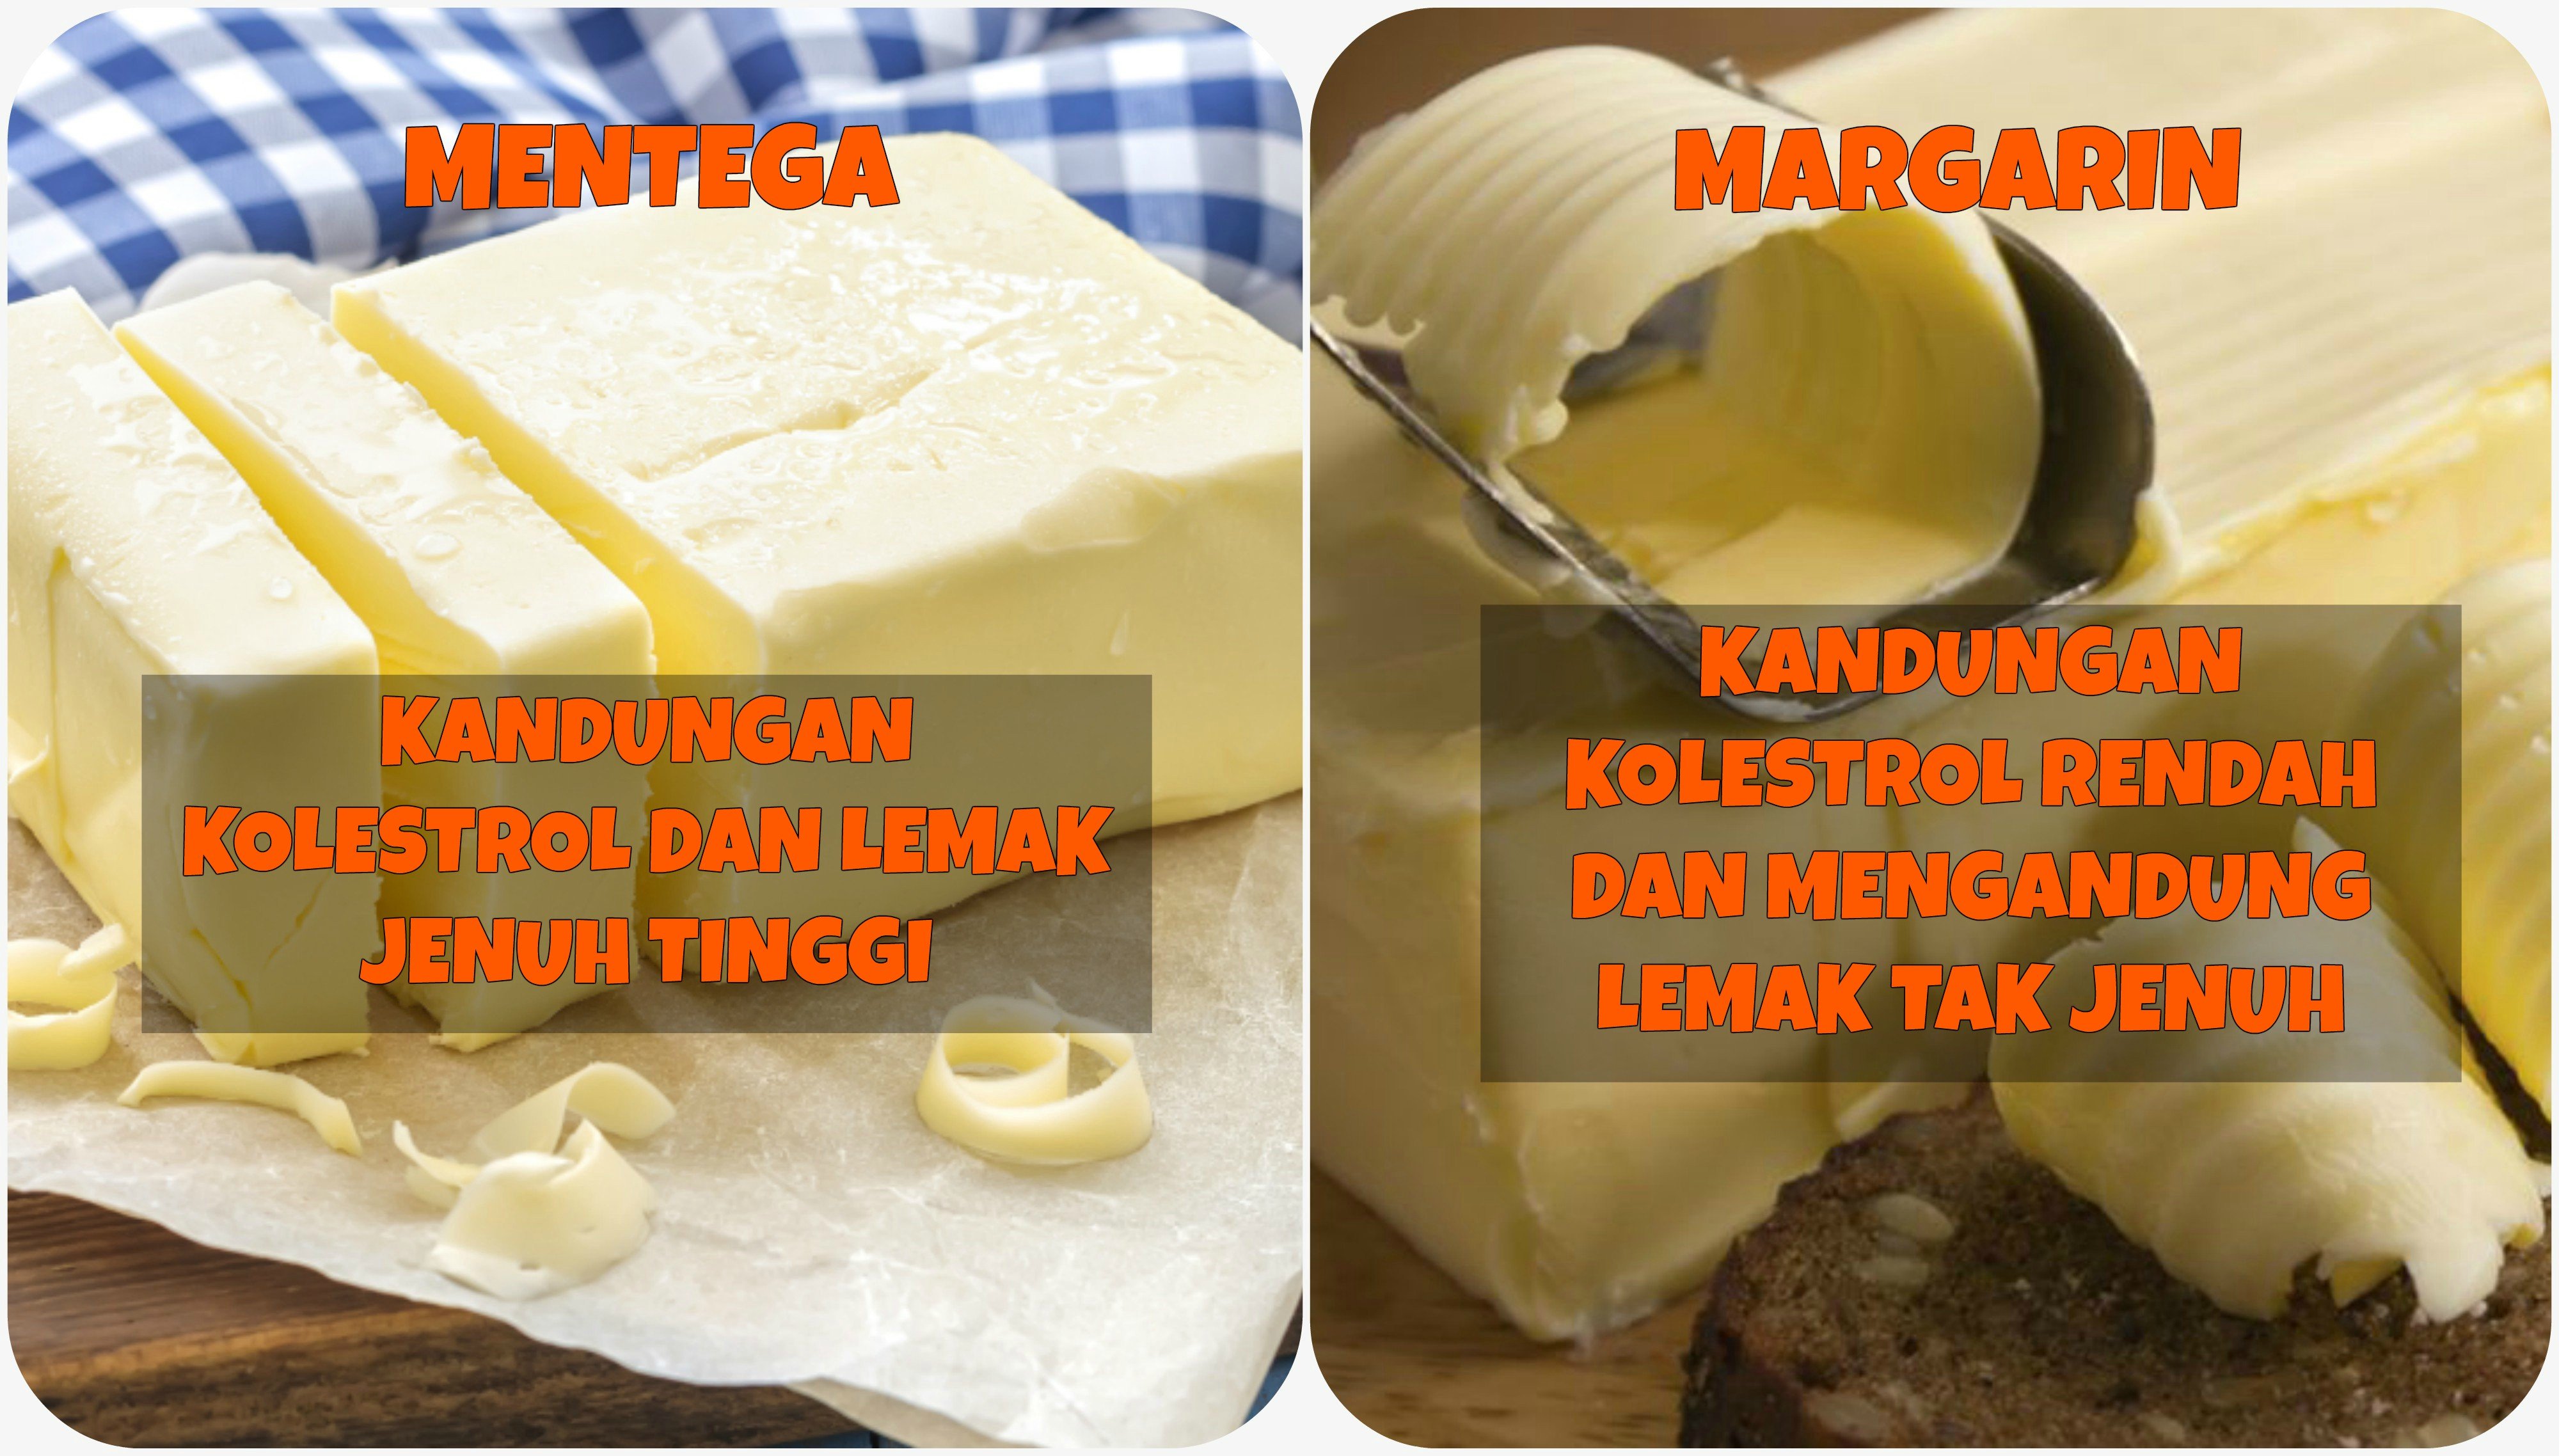 Perbedaan kandungan lemak Mentega dan Margarin